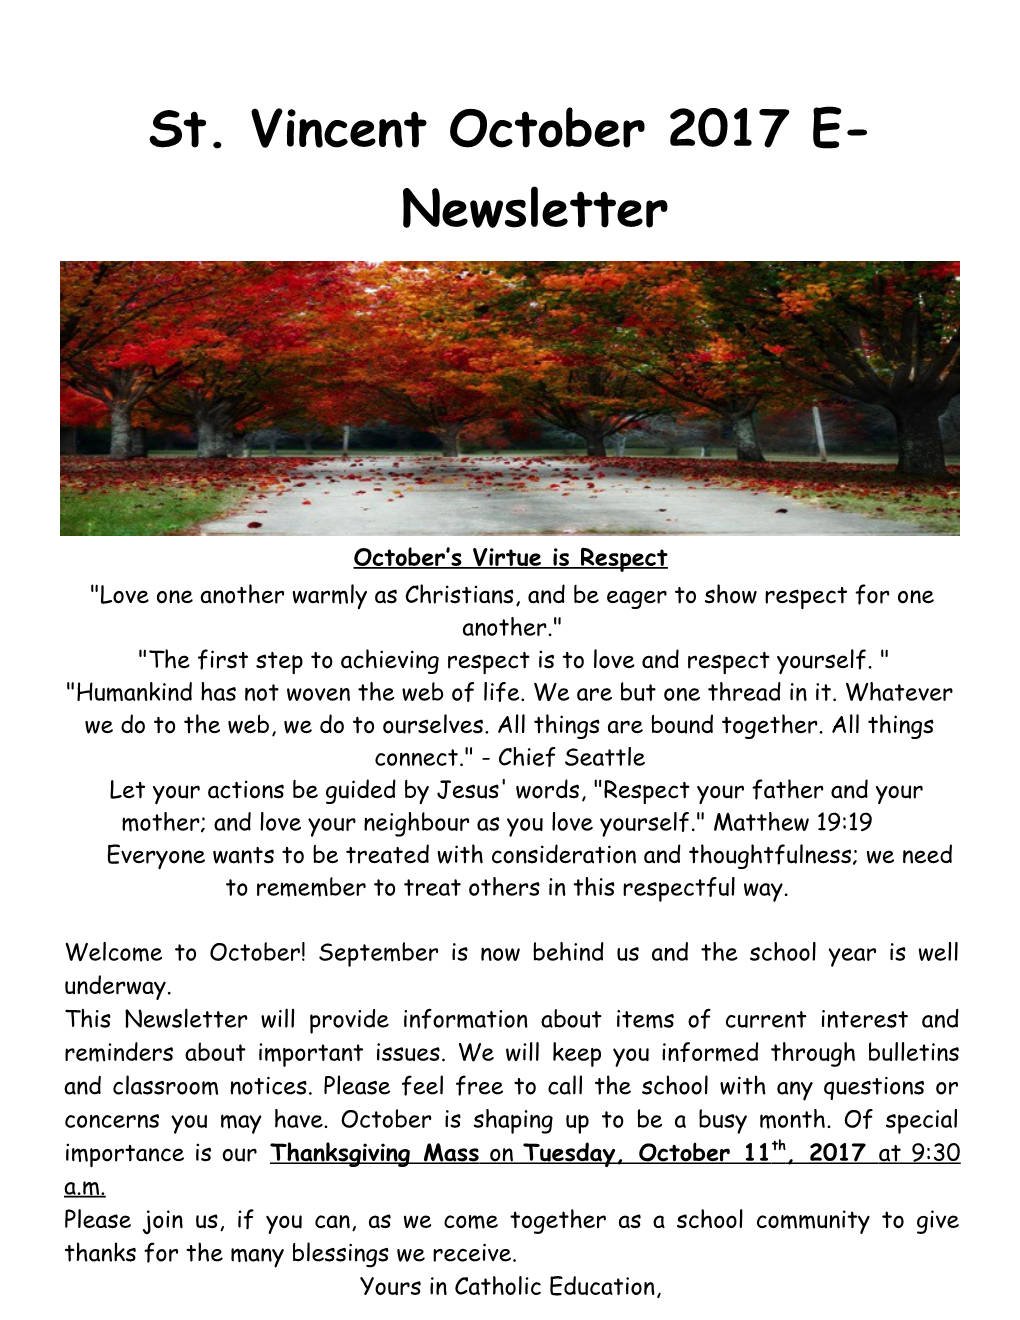 St. Vincent October 2017 E-Newsletter